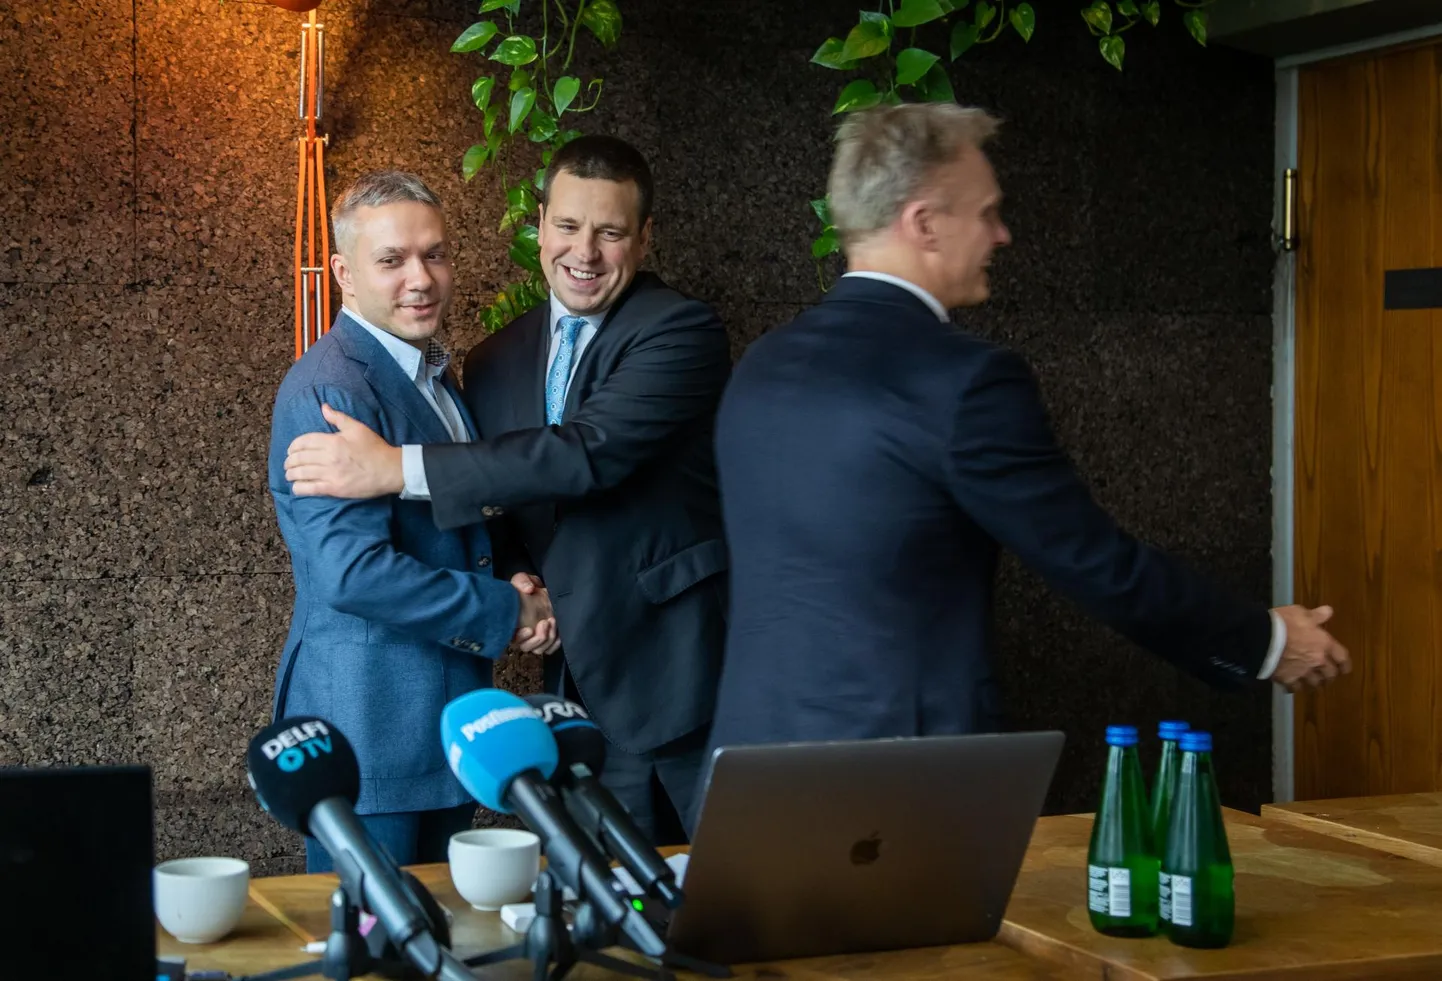 Андрей Коробейник (слева) братается с лидером Центристской партии Юри Ратасом (в центре). Происходящее радует и Имре Сояэра (справа).